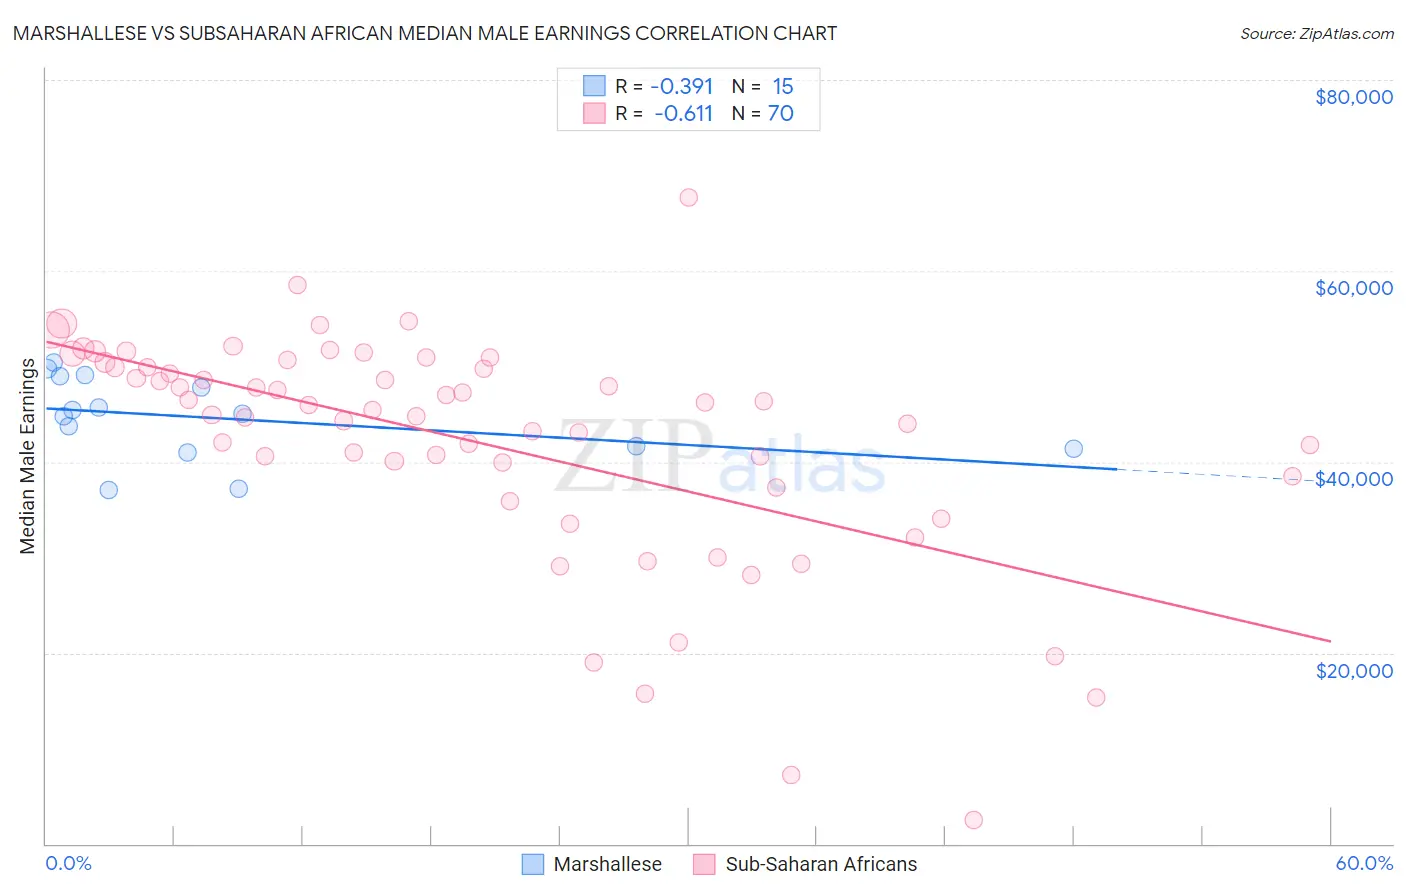 Marshallese vs Subsaharan African Median Male Earnings